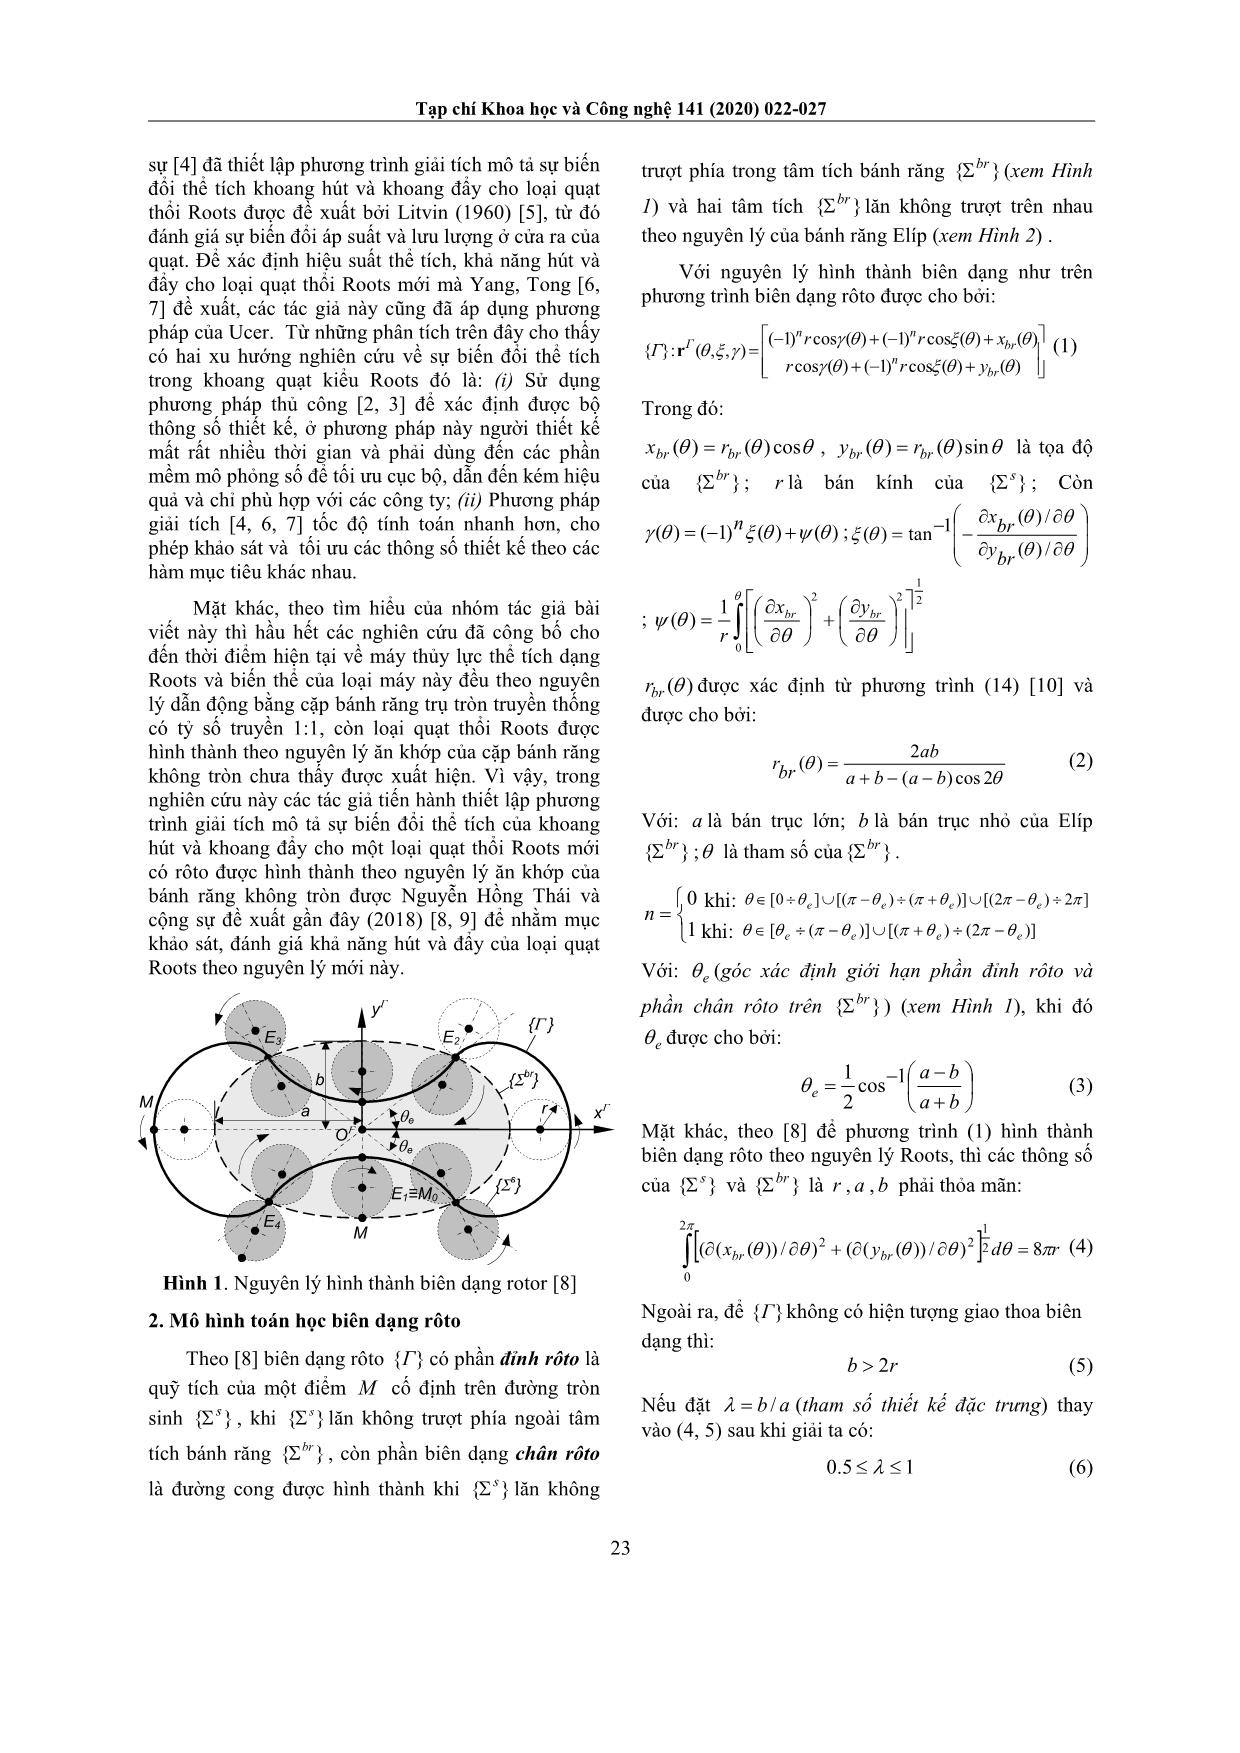 Thiết lập phương trình giải tích mô tả sự biến đổi thể tích trong khoang hút và khoang đẩy của một loại quạt Roots cải tiến trang 2